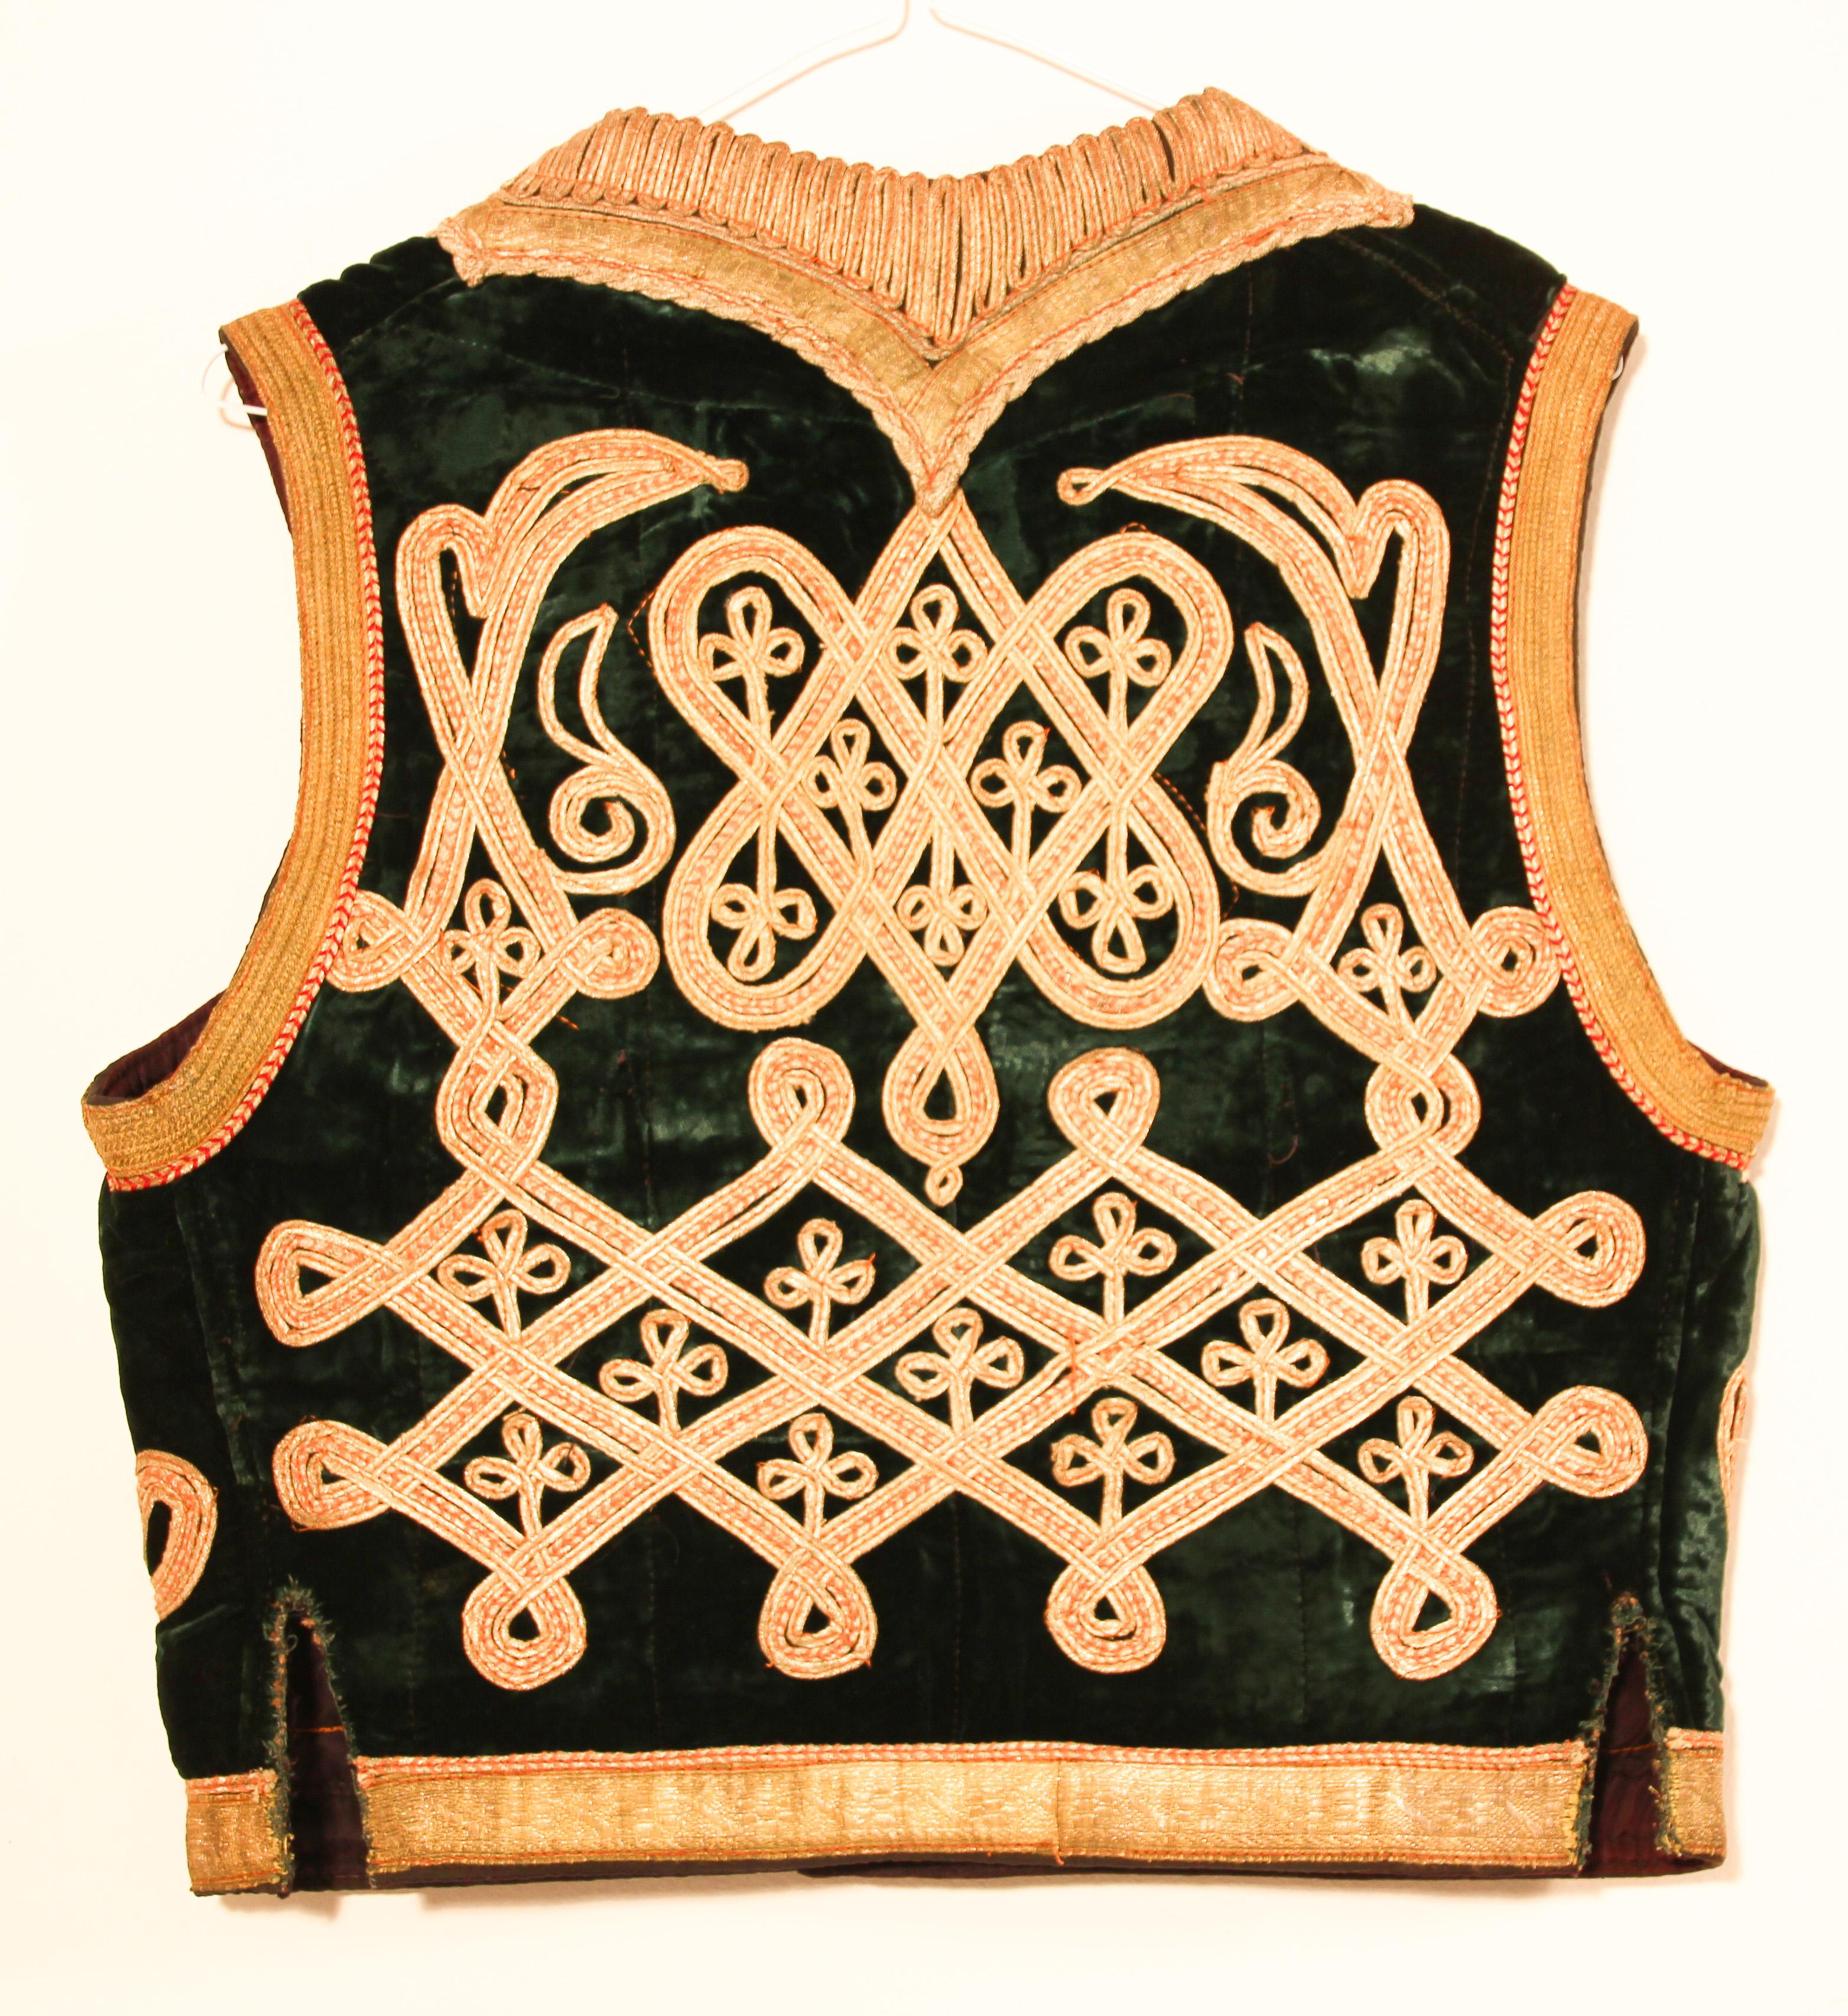 Ancienne veste de style ottoman asiatique en velours vert émeraude, décorée de fils d'or élaborés, garnie de fils métalliques dorés.
Gilet élégant brodé à la main sur velours de soie vert, entièrement doublé.
Ce gilet boléro authentique antique fait